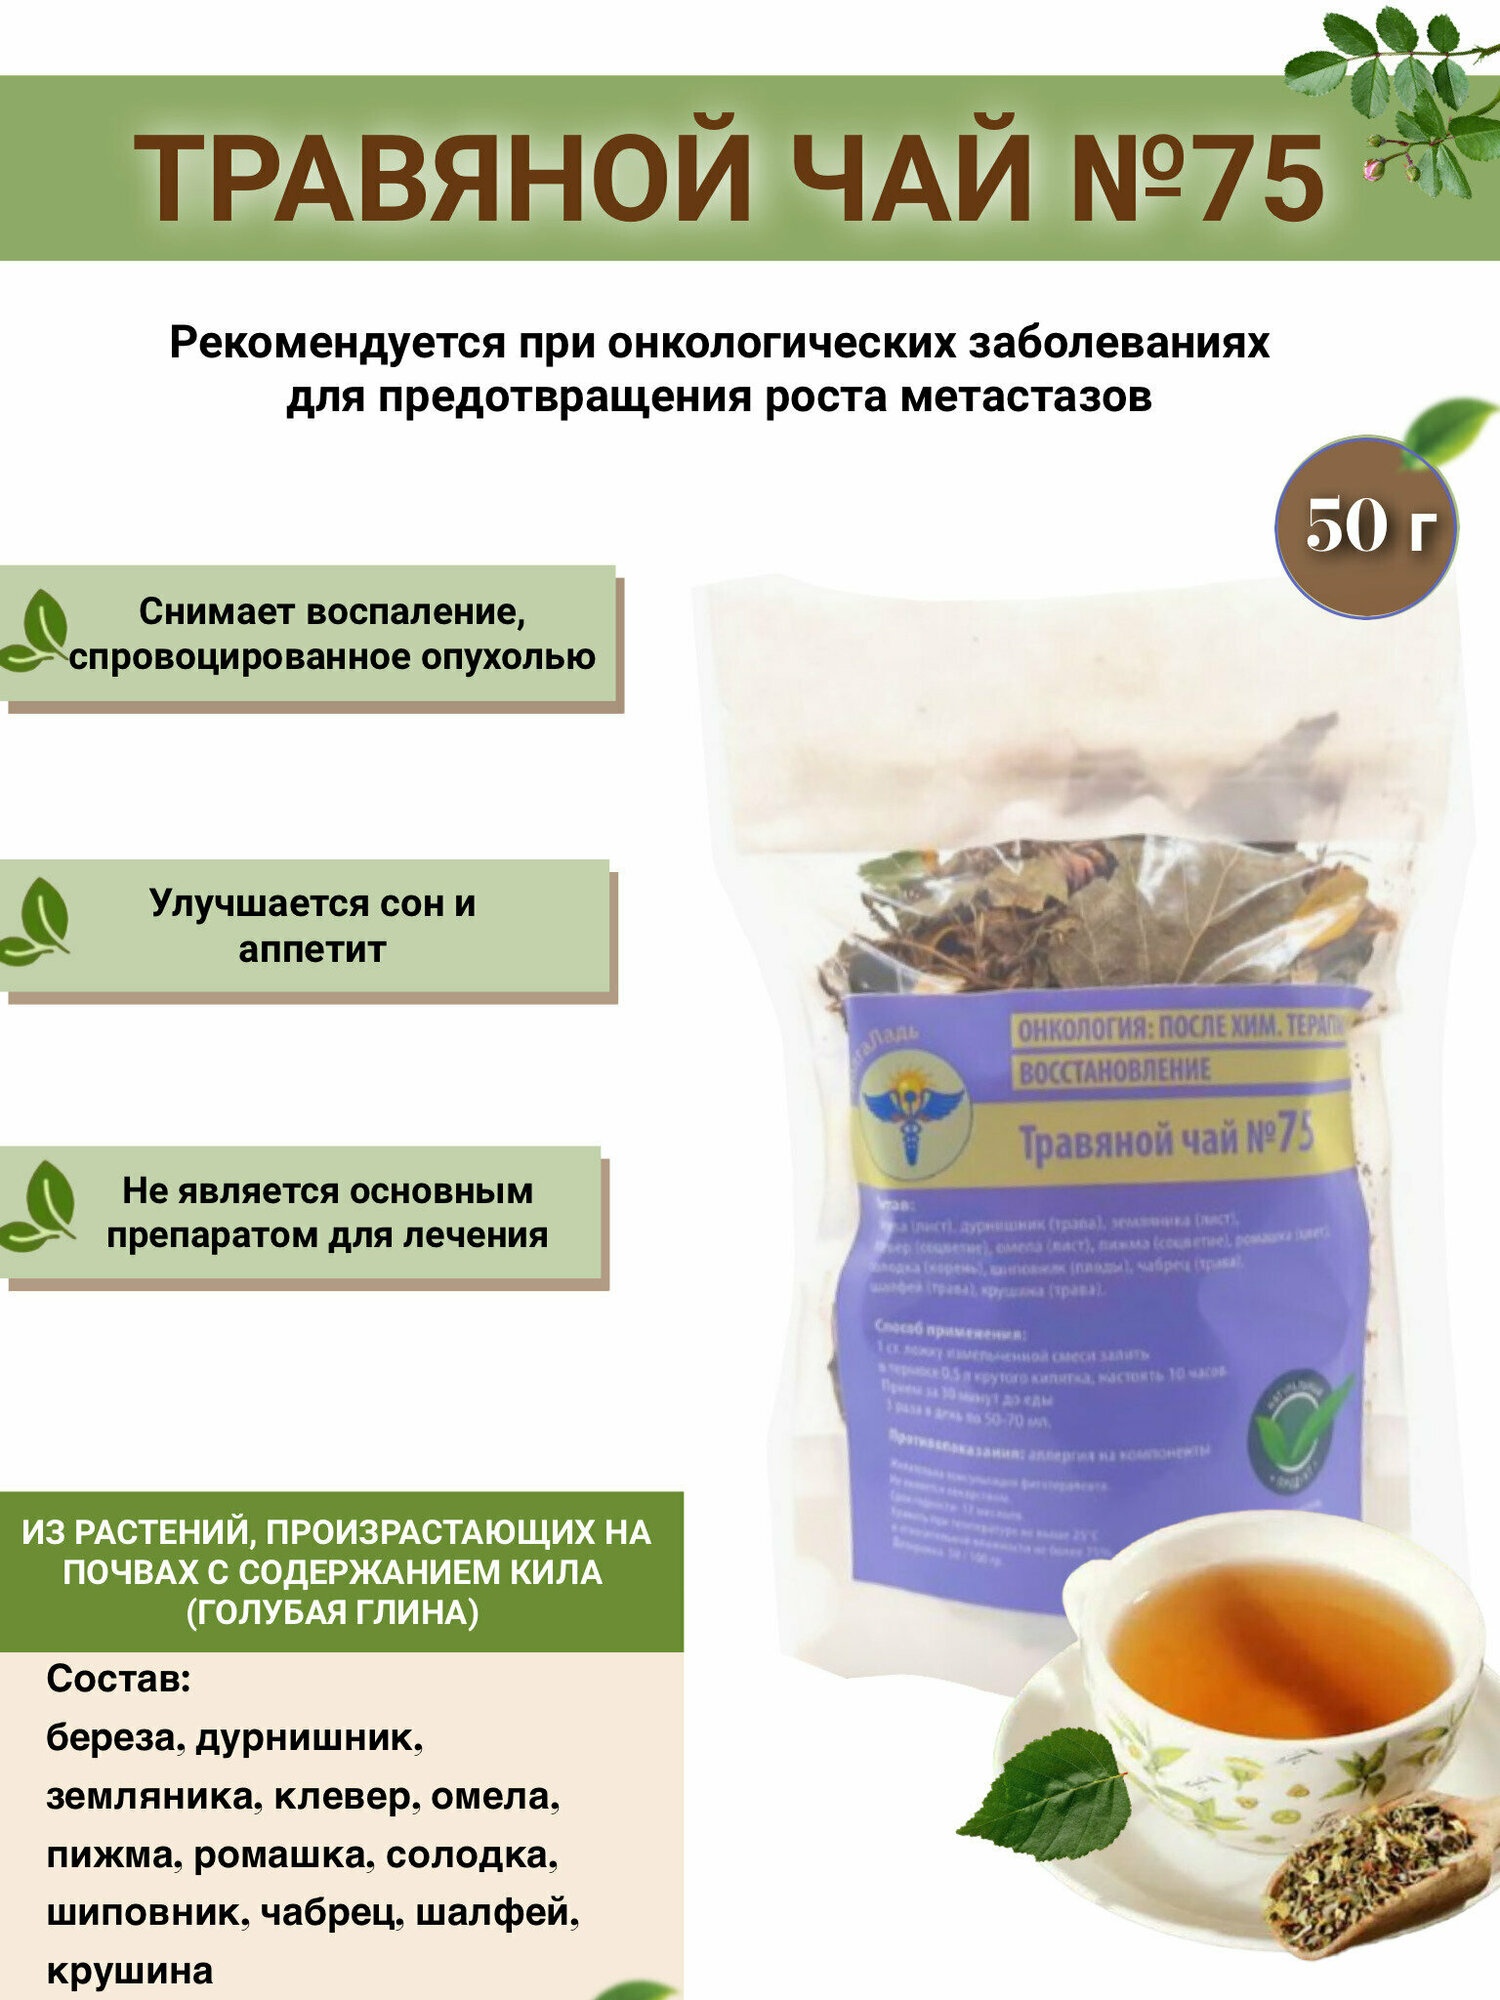 Травяной чай ВолгаЛадь № 75 «Онкология. Общий настой»